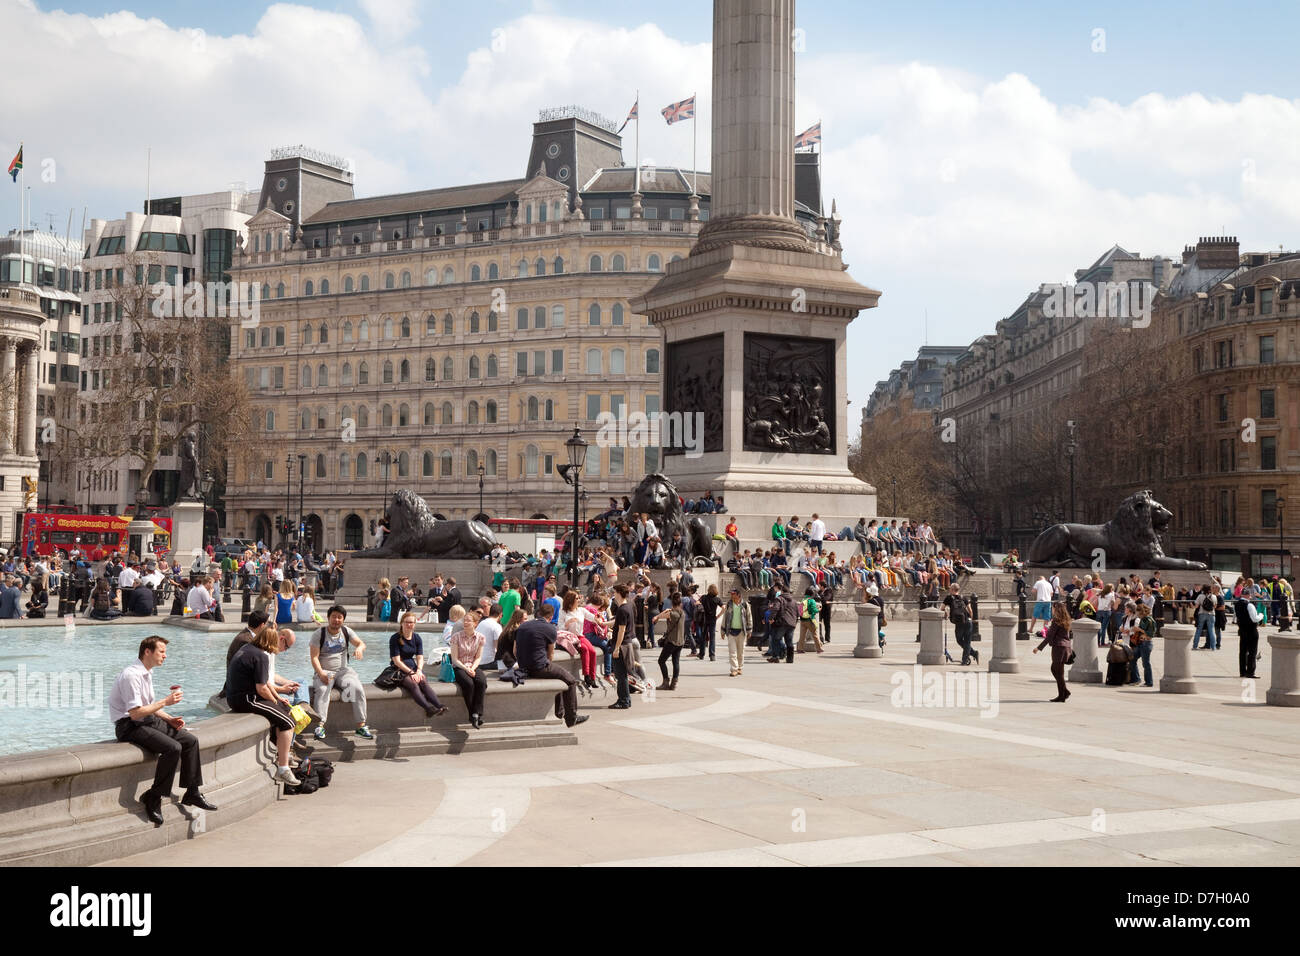 Les gens assis autour de la fontaine, un jour ensoleillé, Trafalgar Square, Central London WC2, UK Banque D'Images